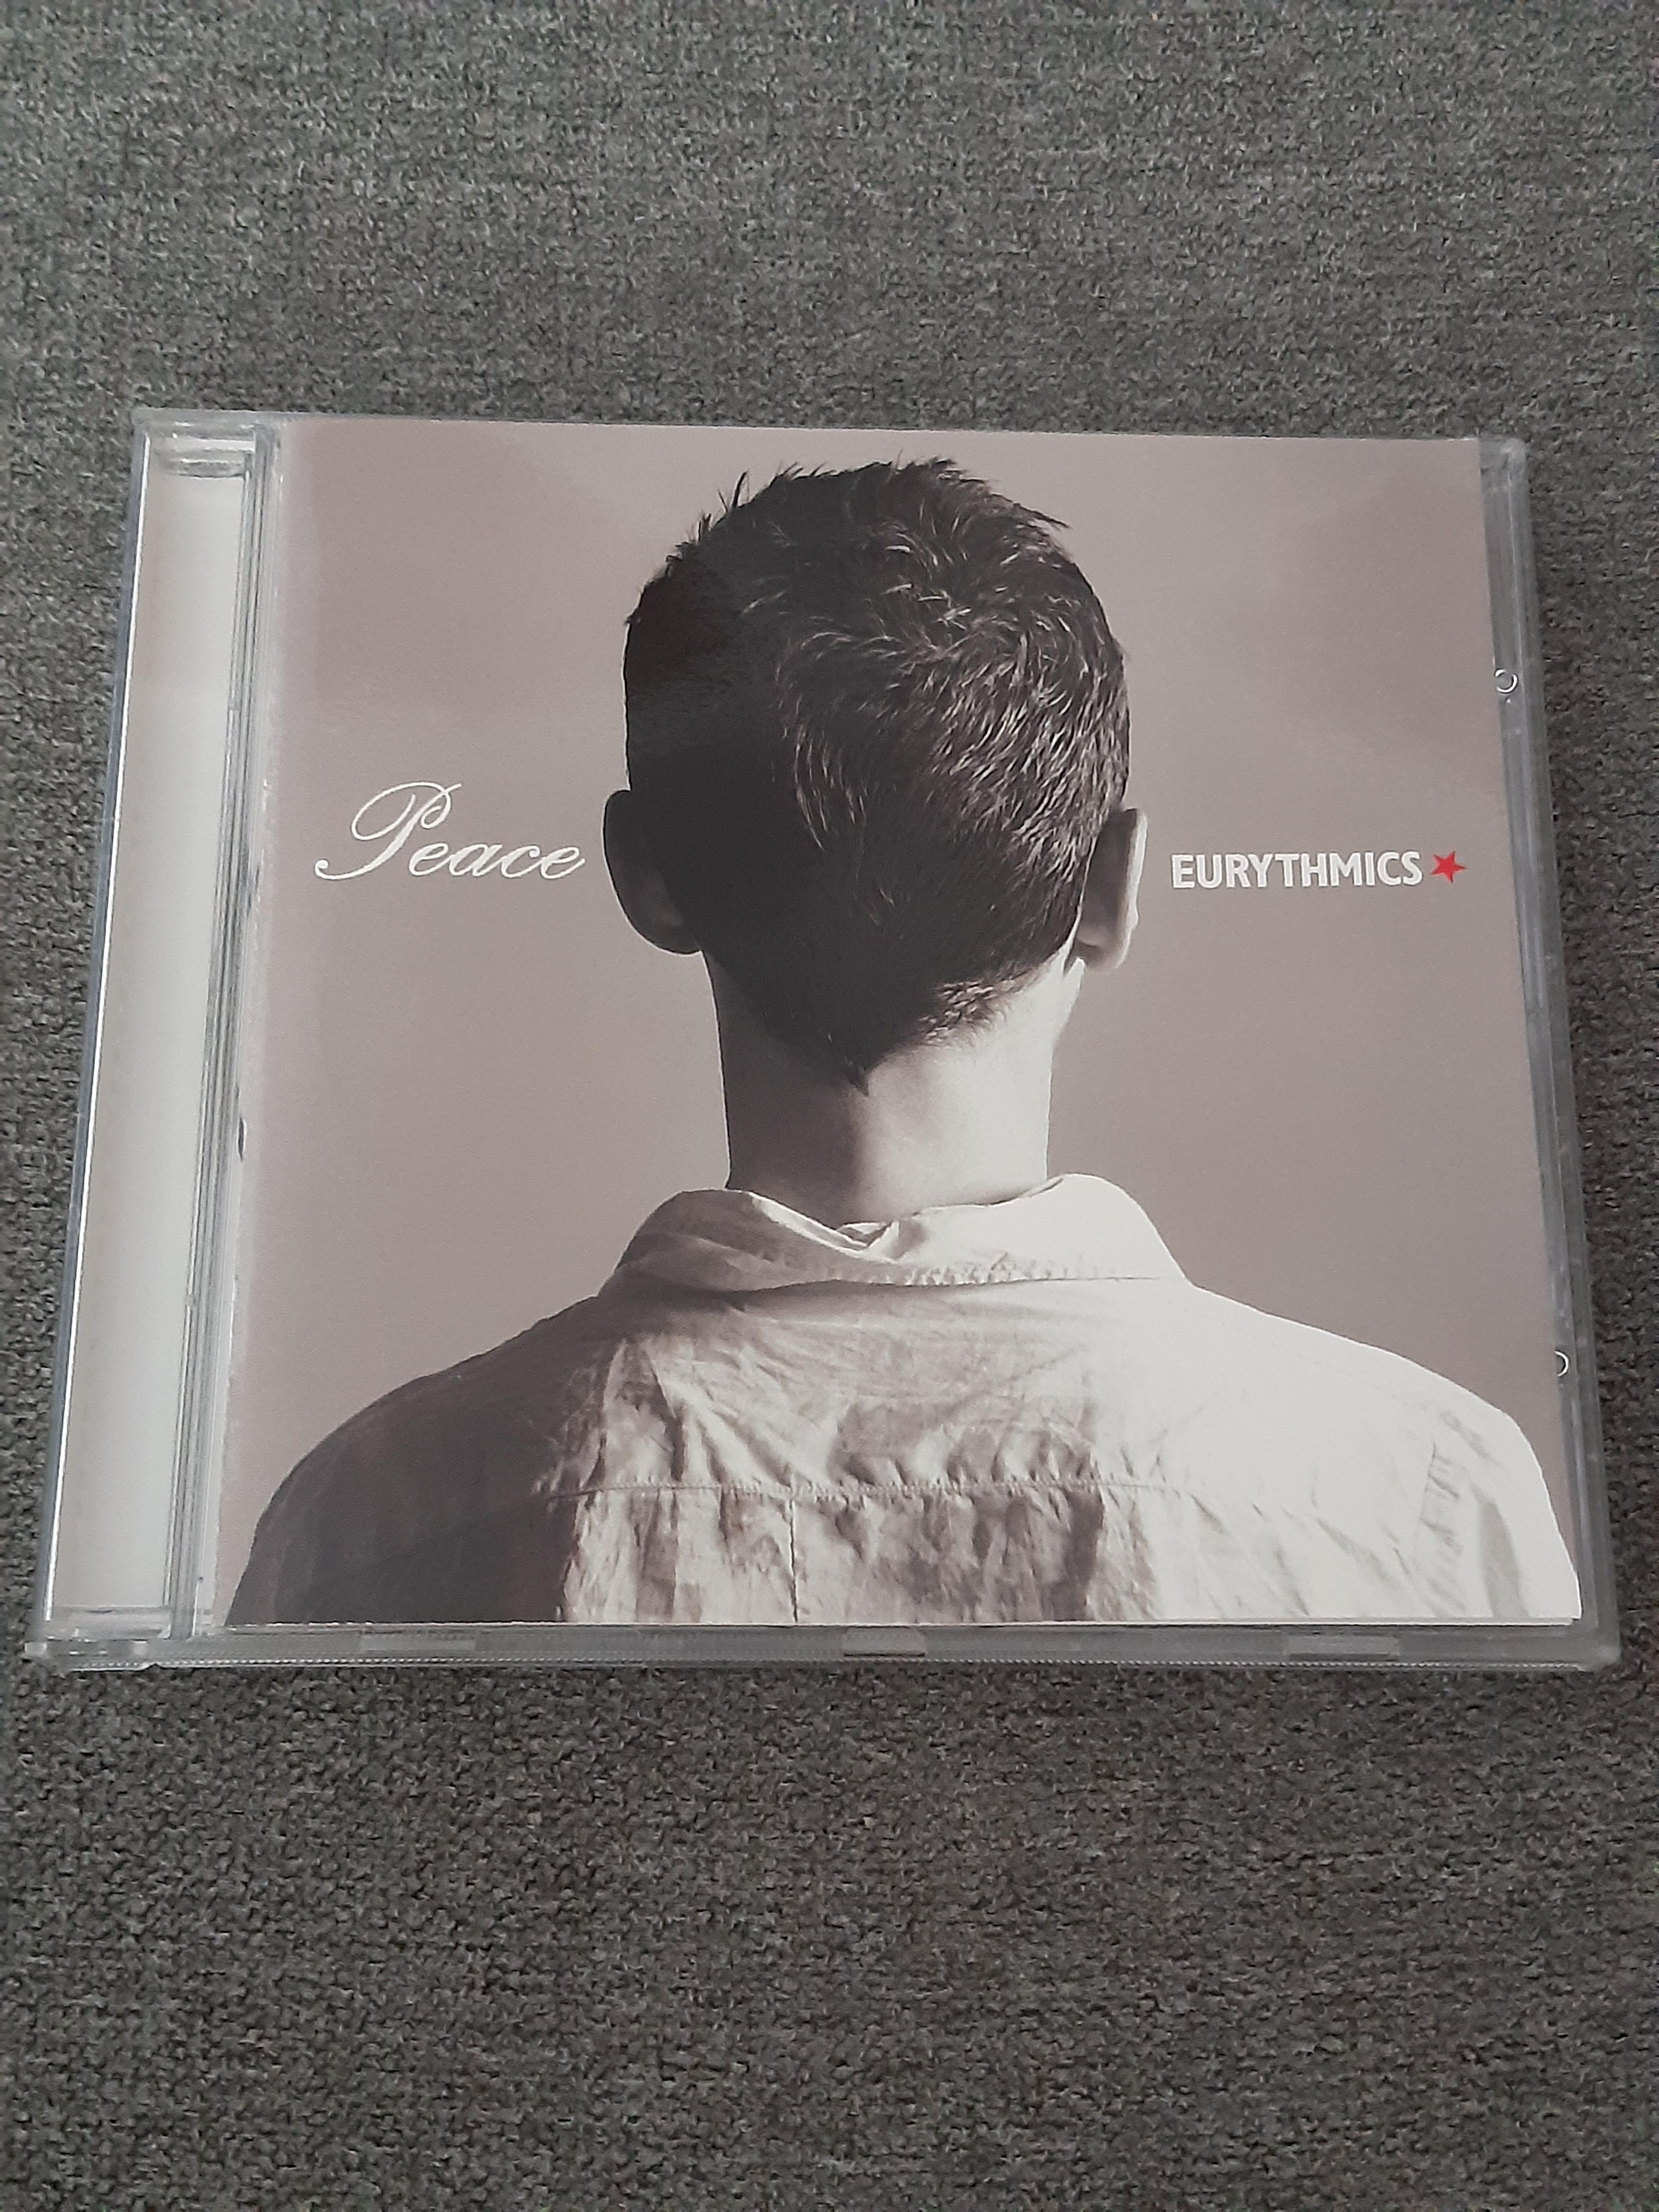 Eurythmics - Peace - CD (käytetty)